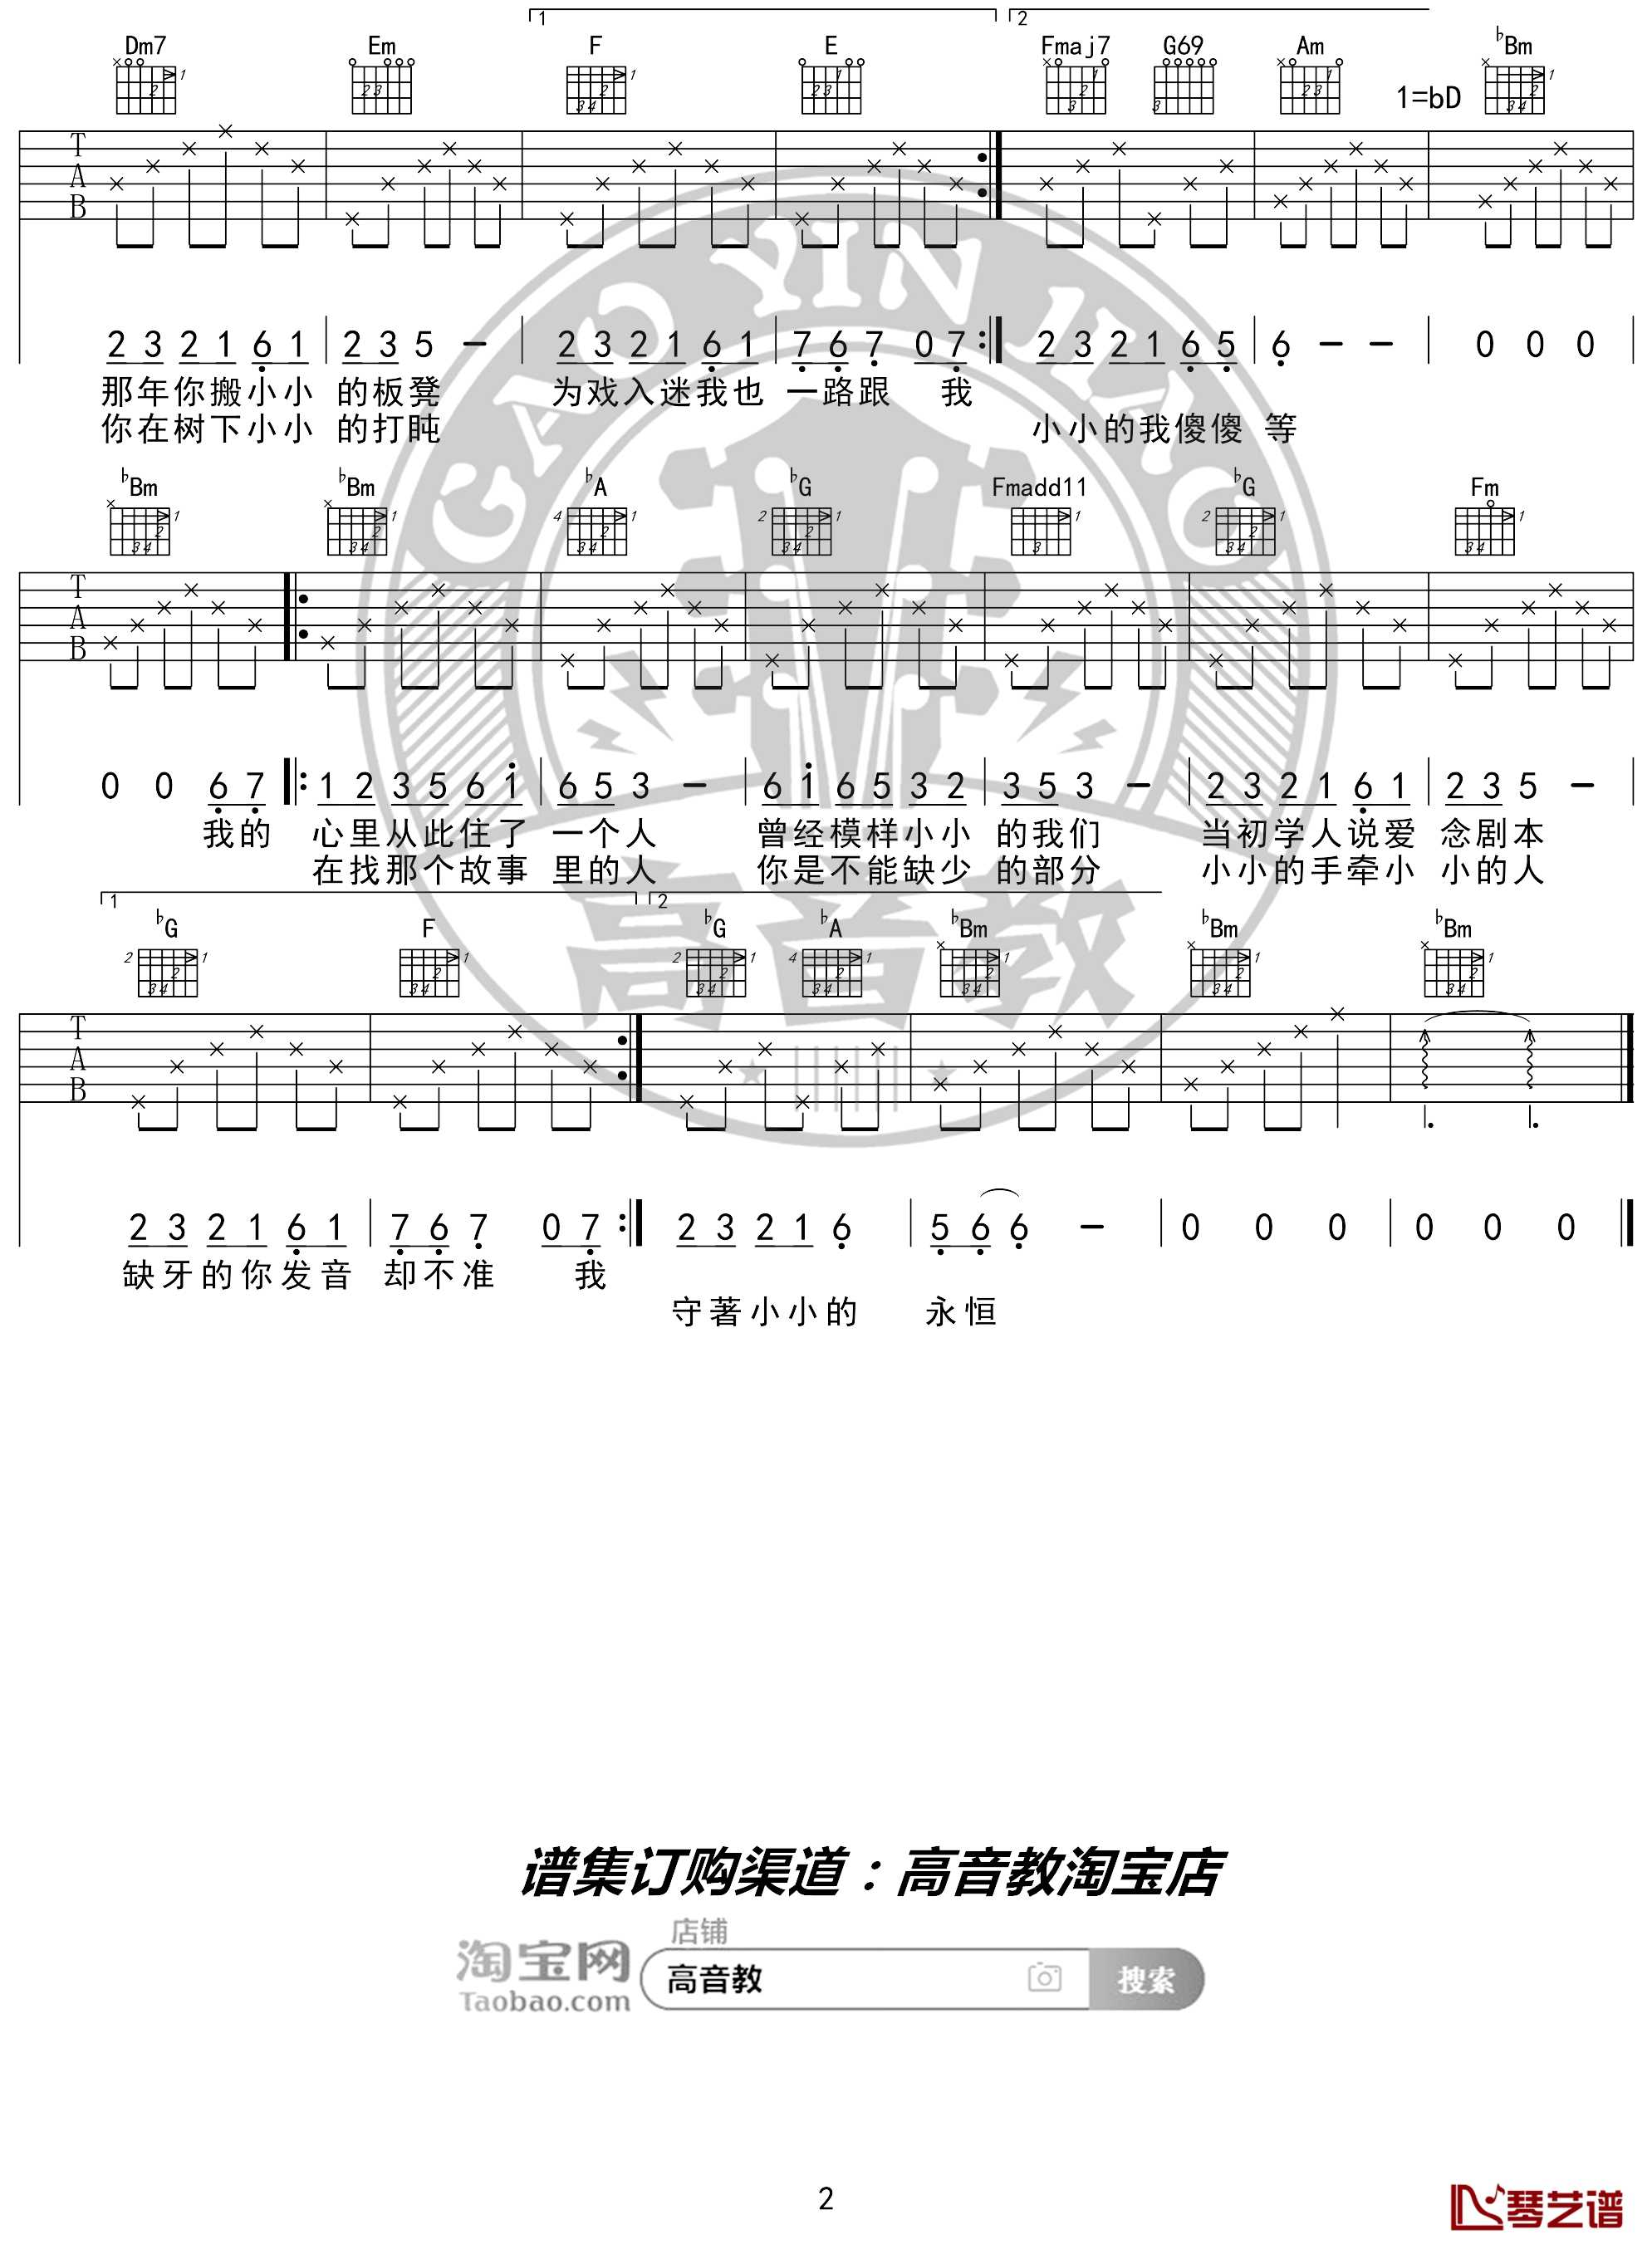 中国名歌《小芳》歌曲简谱-简谱大全 - 乐器学习网